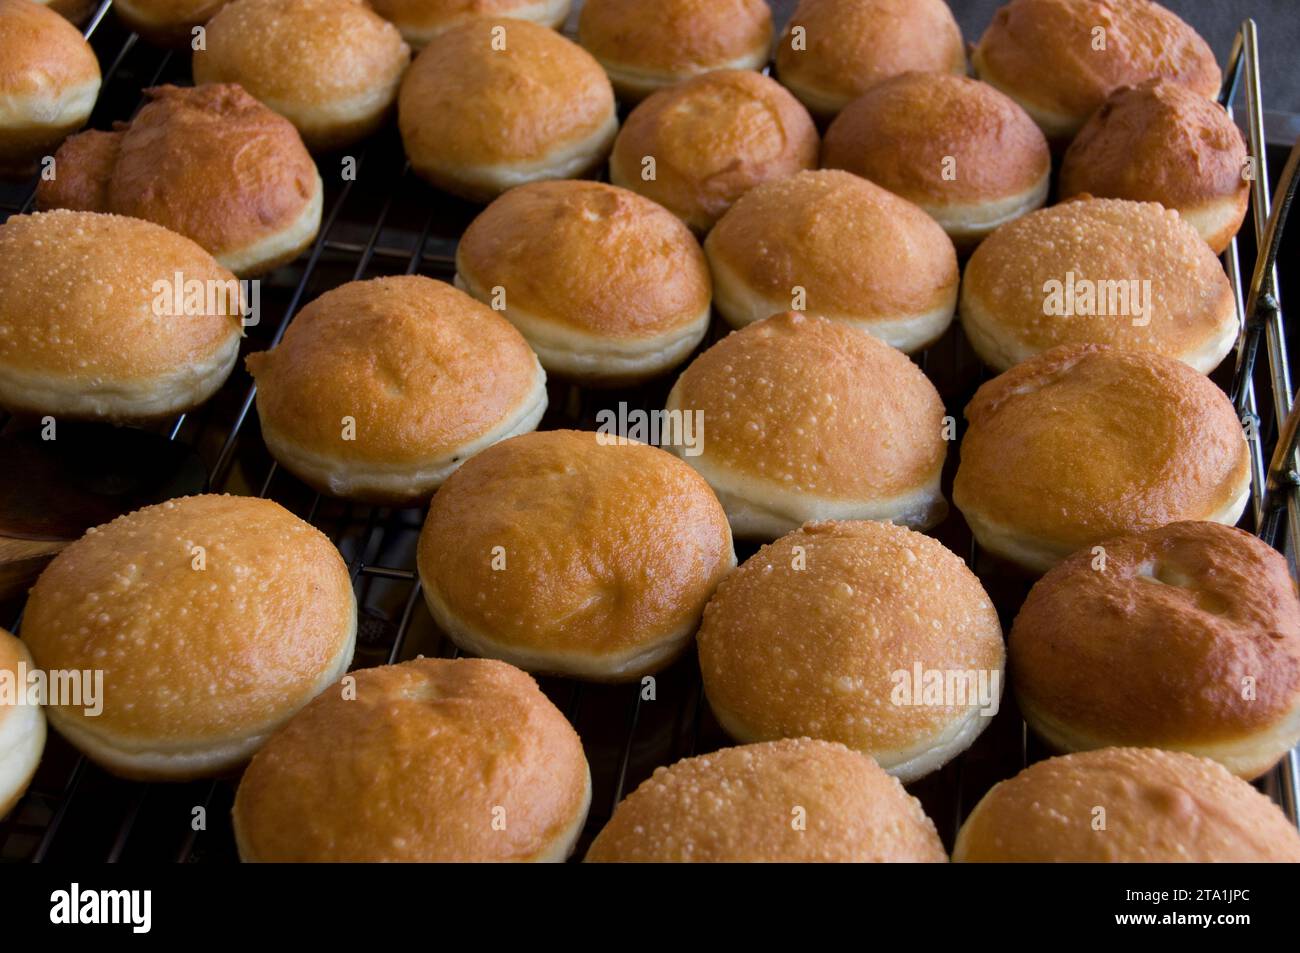 Ciambelle decorative in una panetteria di Gerusalemme durante la celebrazione della festa ebraica di Hanukkah, quando è tradizionale mangiare cibi fritti in olio. Foto Stock